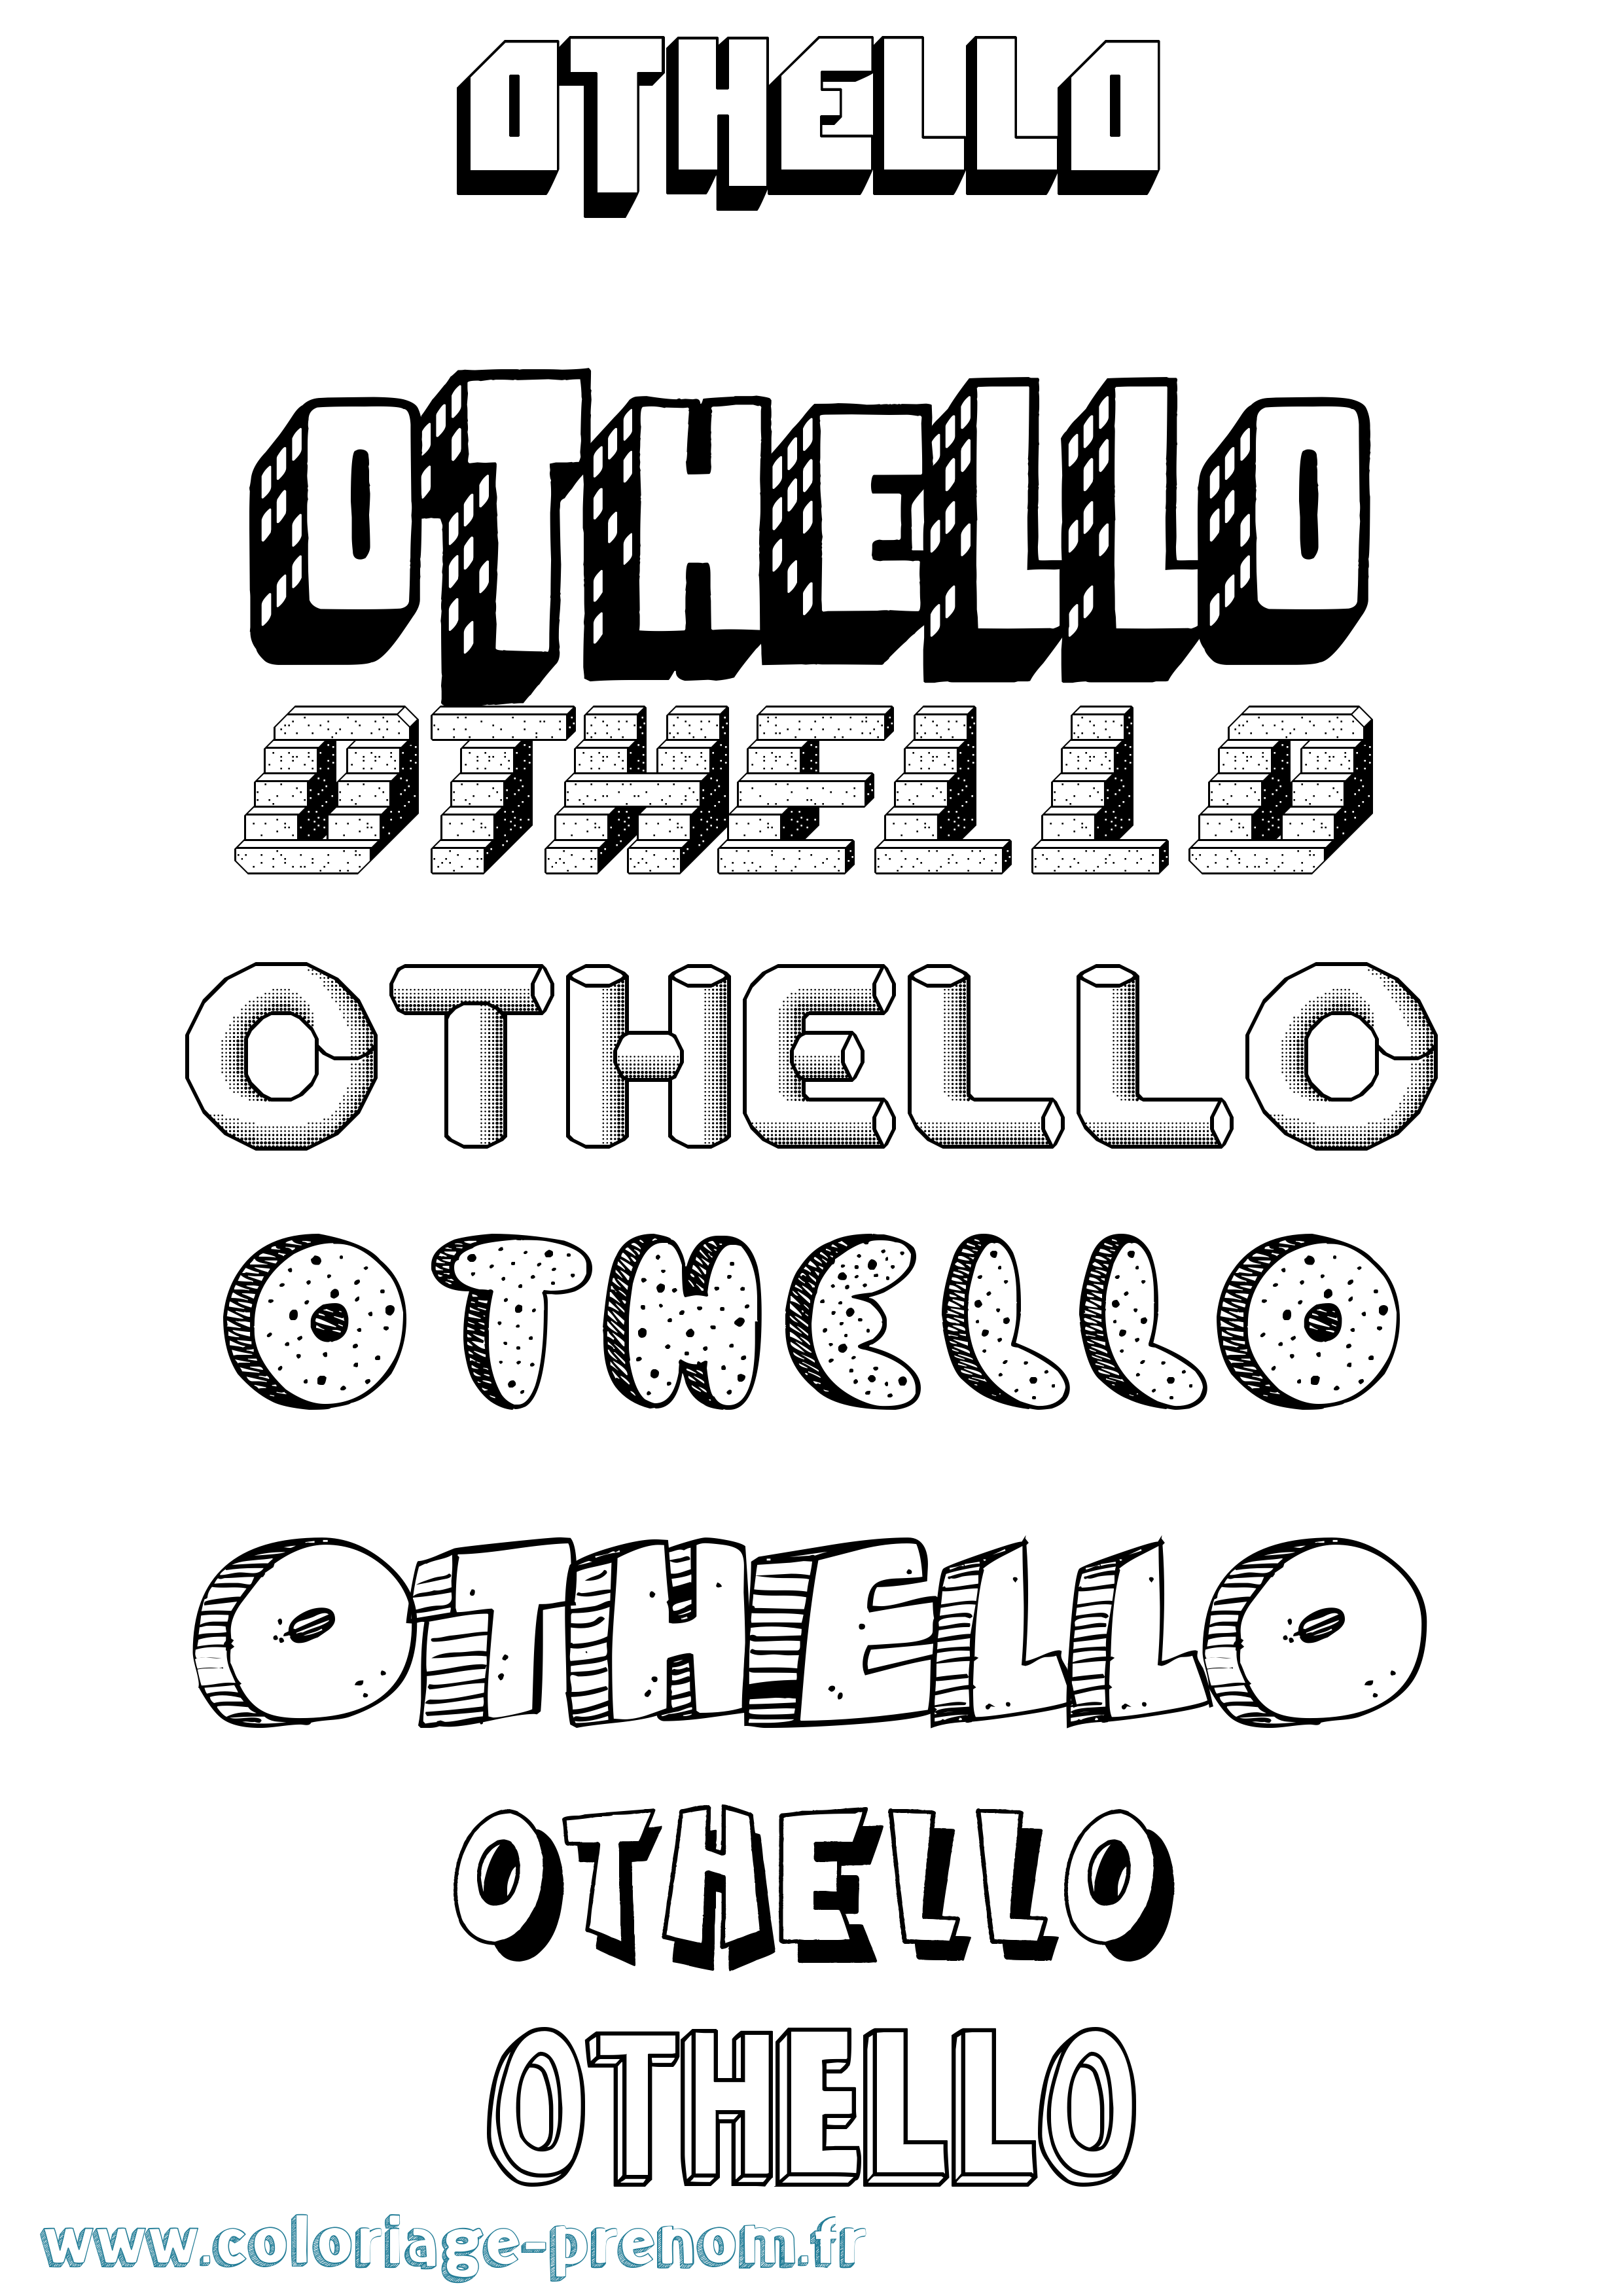 Coloriage prénom Othello Effet 3D